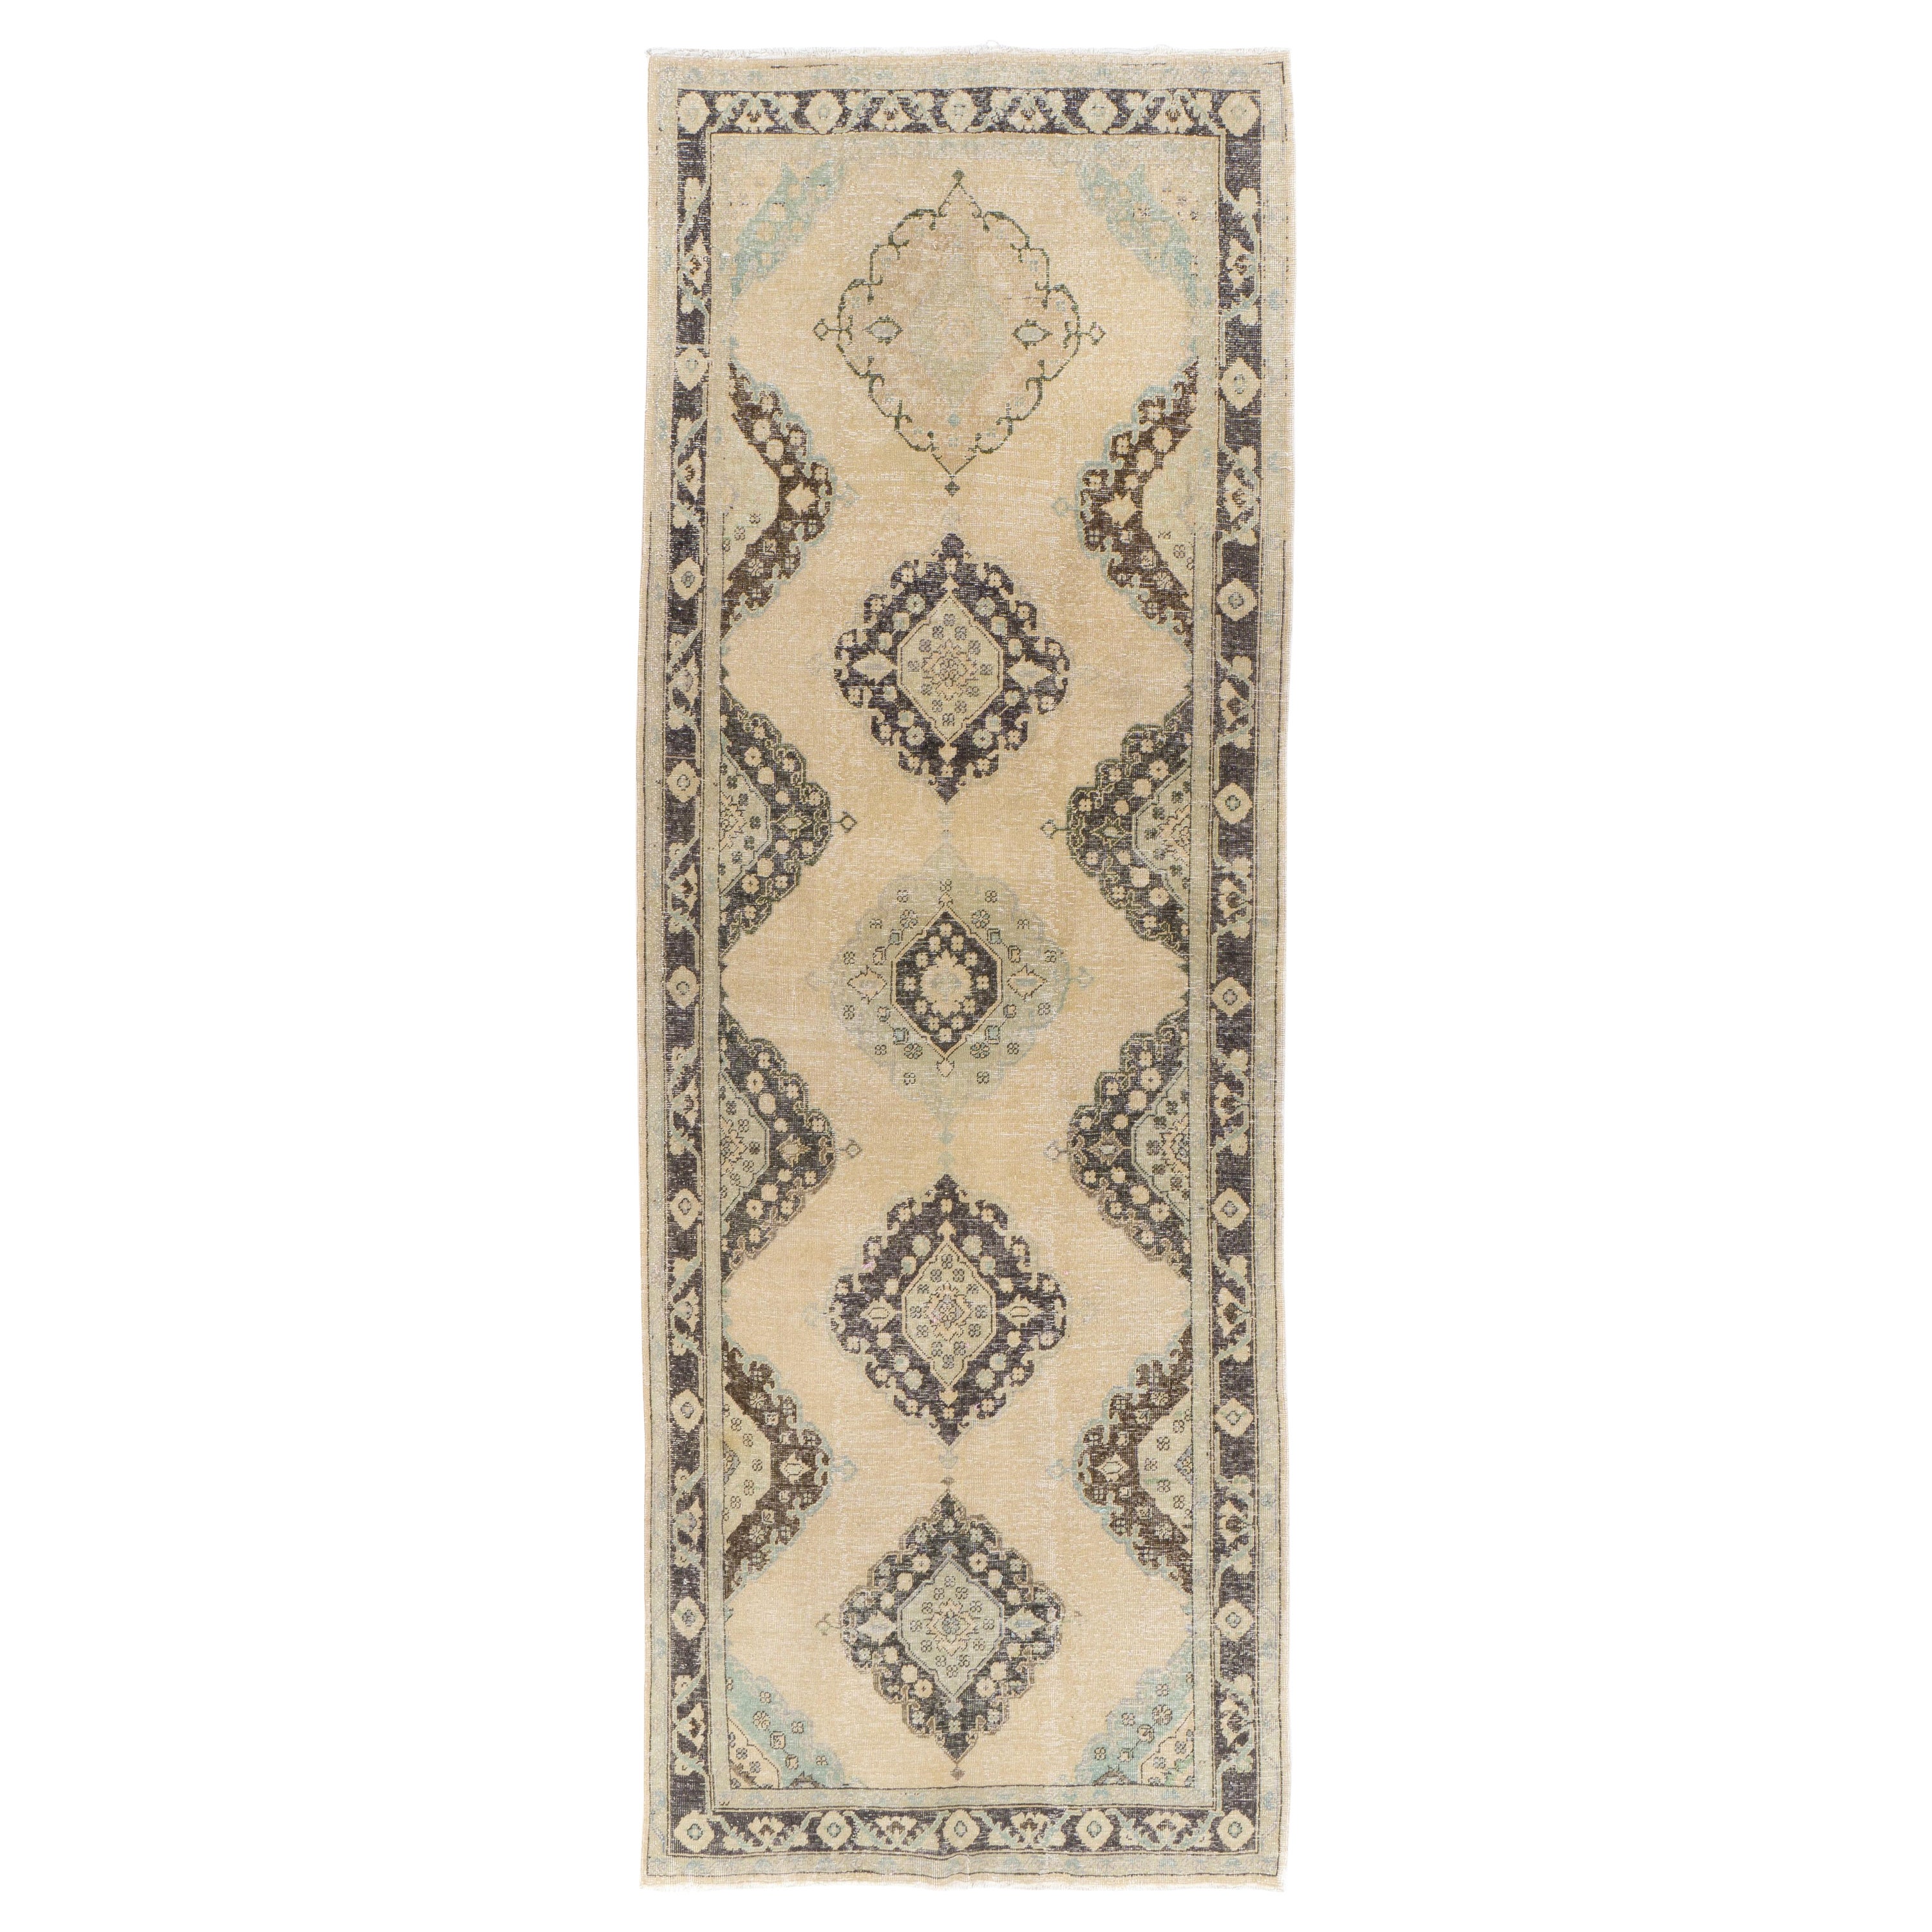 4.6x12.7 Ft Vintage Anatolian Oushak Runner. Beige Handmade Carpet For Sale